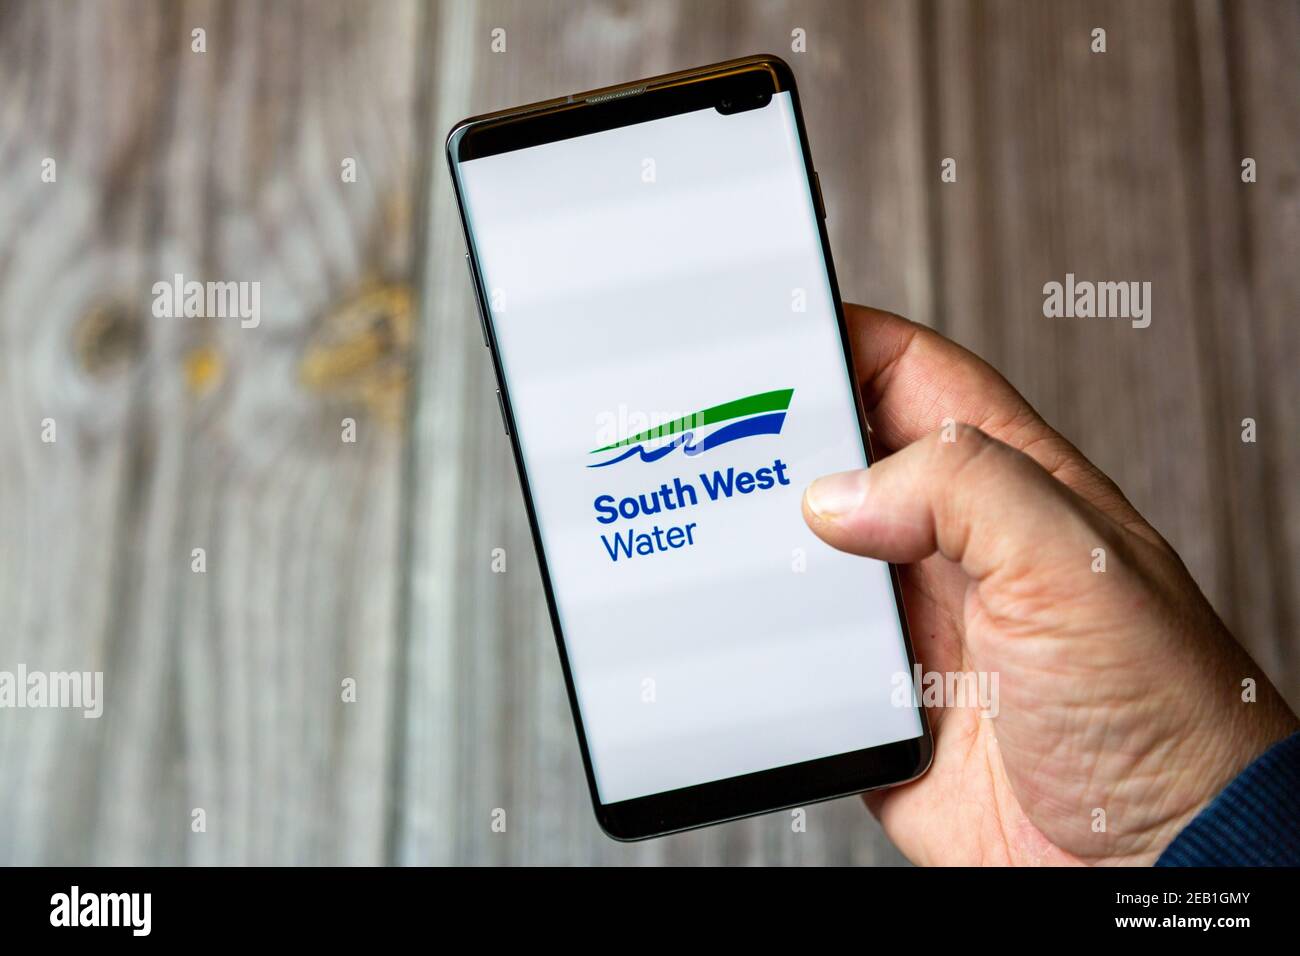 Ein Mobiltelefon oder Mobiltelefon, das von einem gehalten wird Hand mit der South West Water App auf dem Bildschirm geöffnet Stockfoto